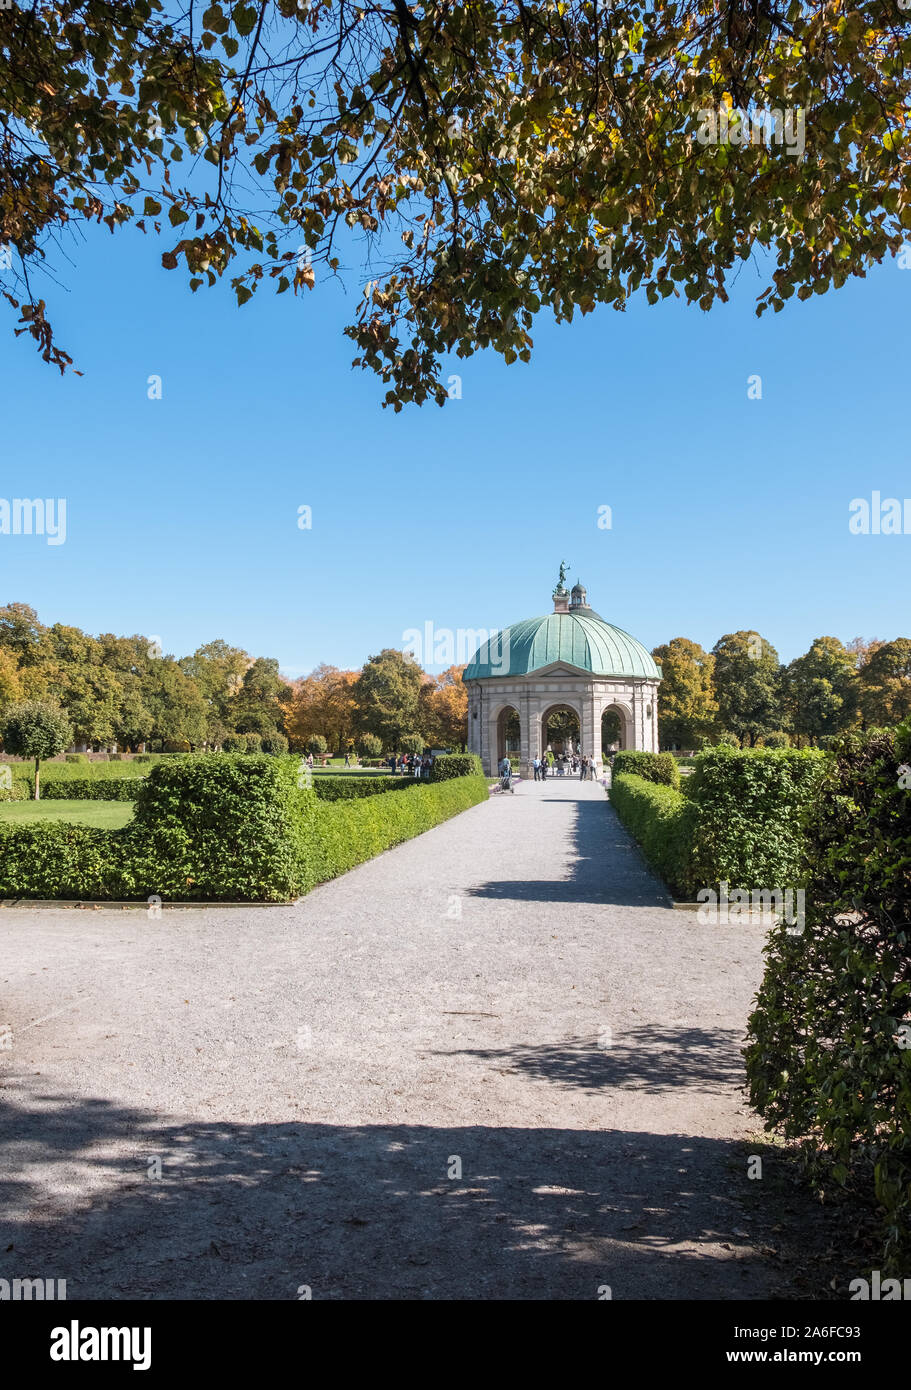 Diana Tempel (dianatempel), Hofgarten, München, Bayern, Deutschland, eine 12 seitige Pavillon aus der Zeit der Renaissance. Stockfoto